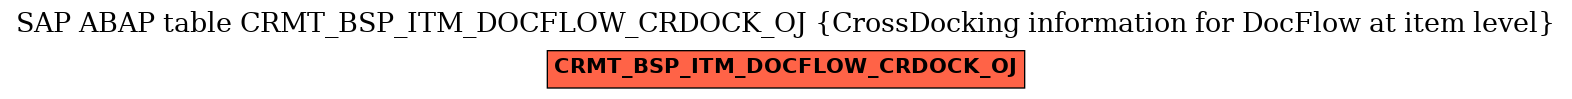 E-R Diagram for table CRMT_BSP_ITM_DOCFLOW_CRDOCK_OJ (CrossDocking information for DocFlow at item level)